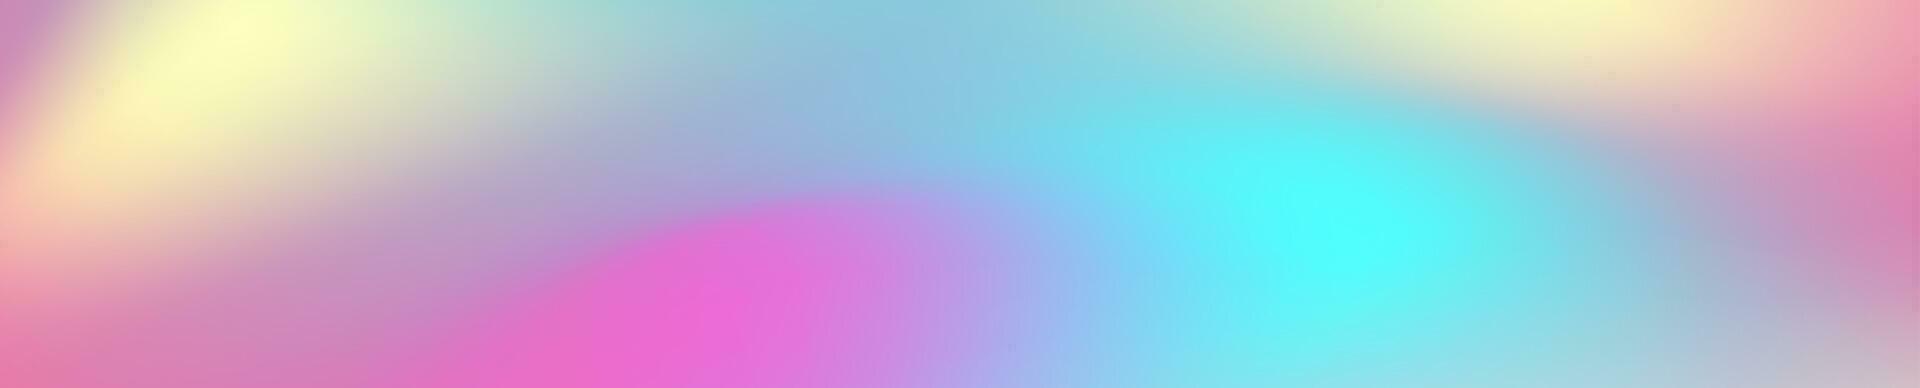 färgrik holografiska folie abstrakt flytande vågor bakgrund vektor